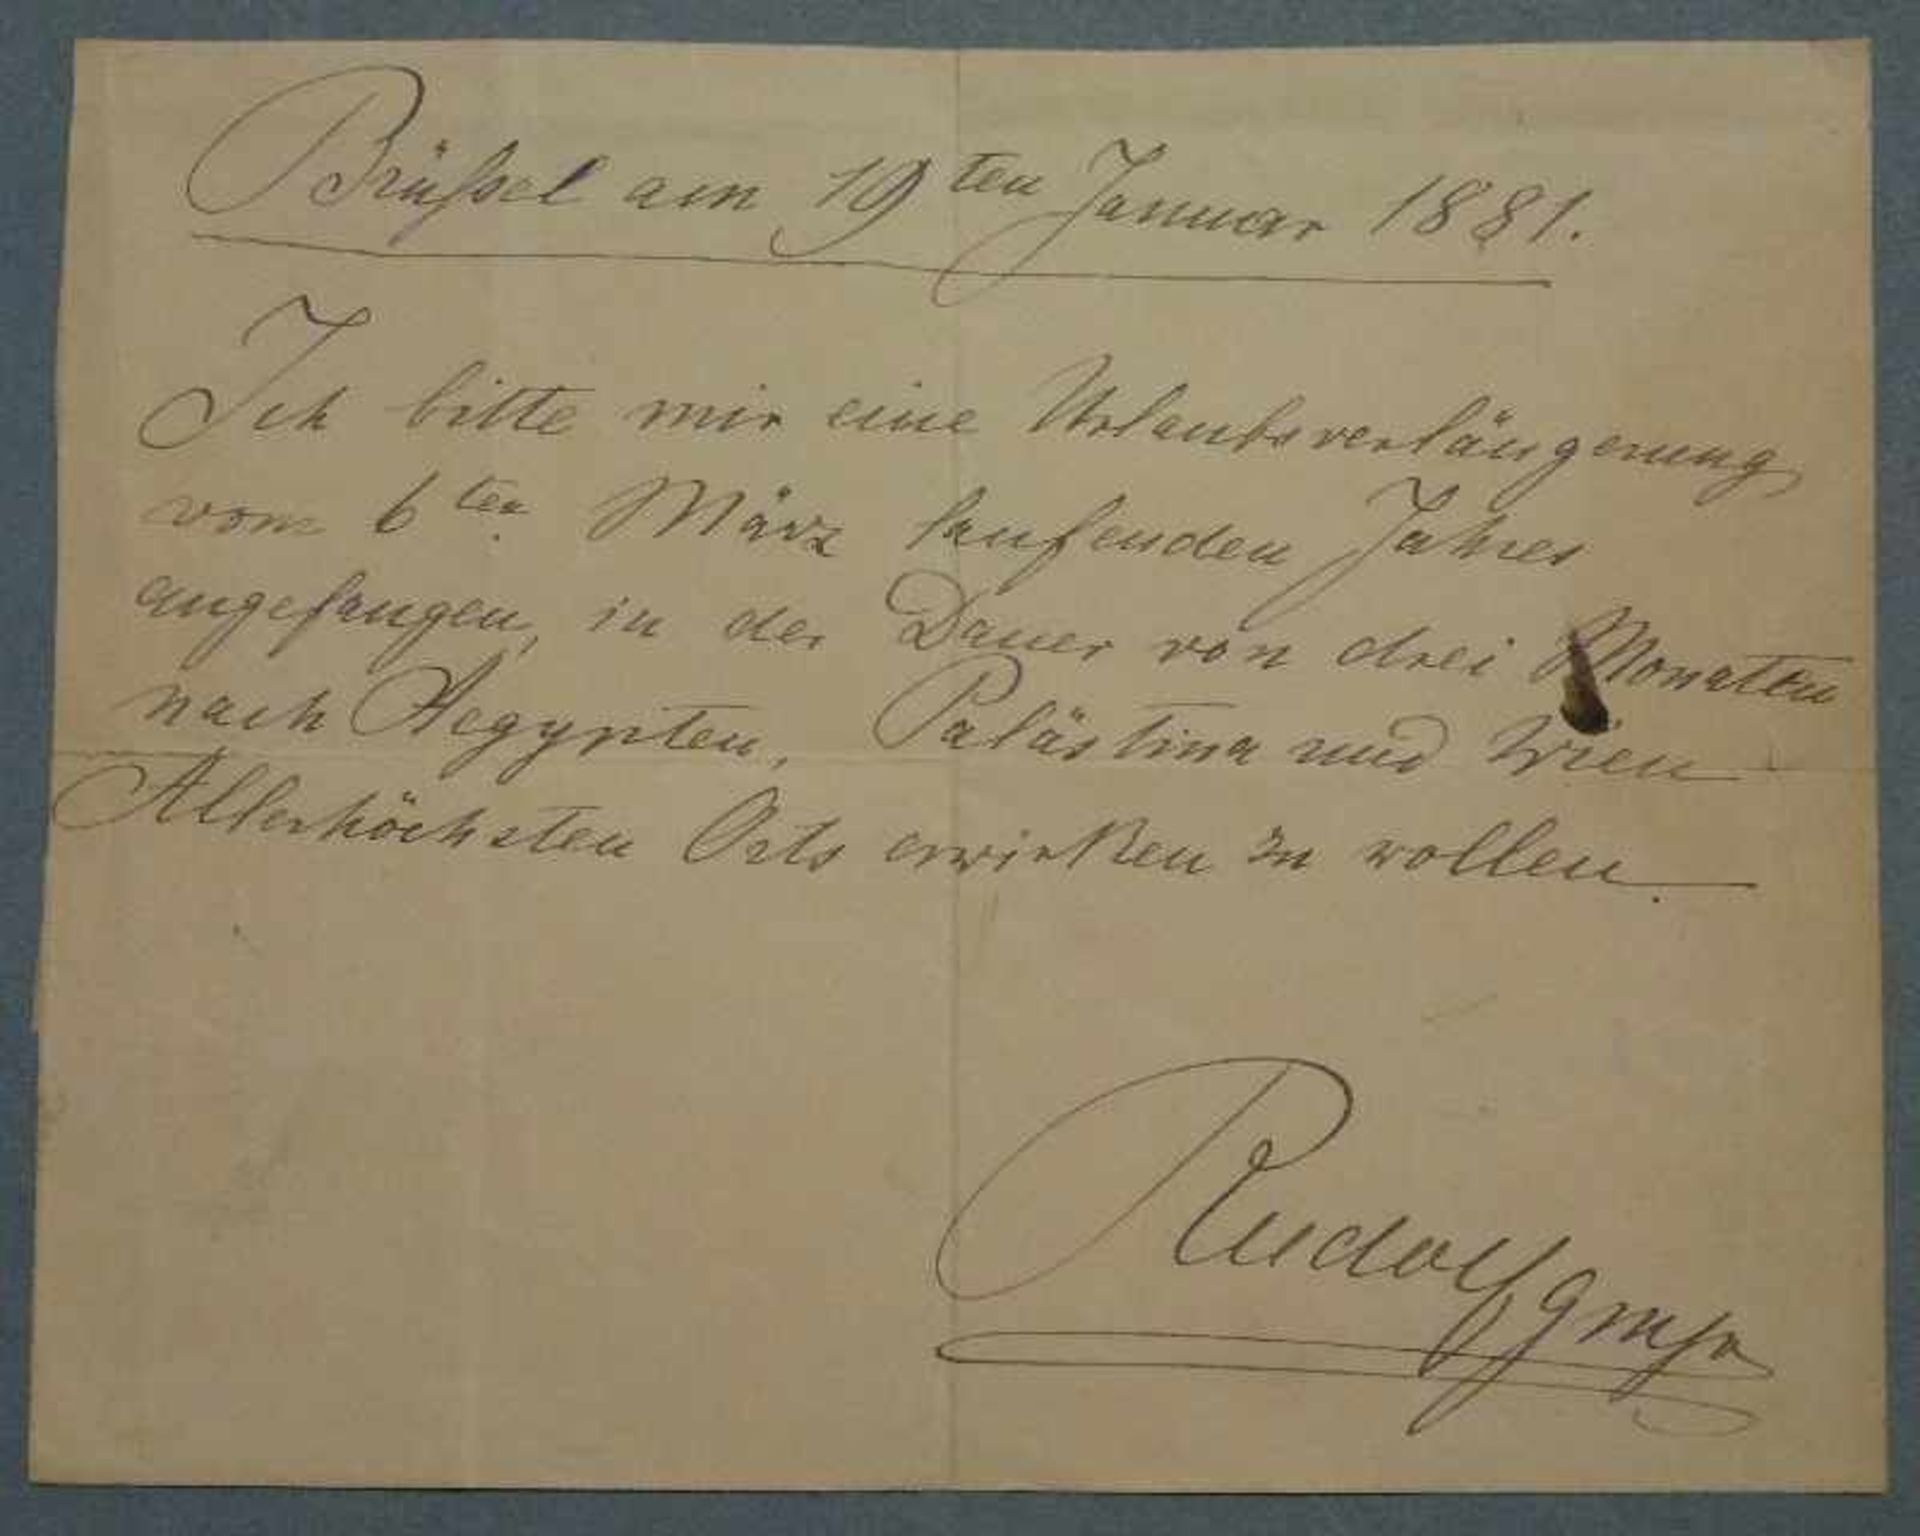 Urlaubsantrag, Kronprinz Rudolf, 1881 eigenhändiger Brief des österreichischen Kronprinzen in